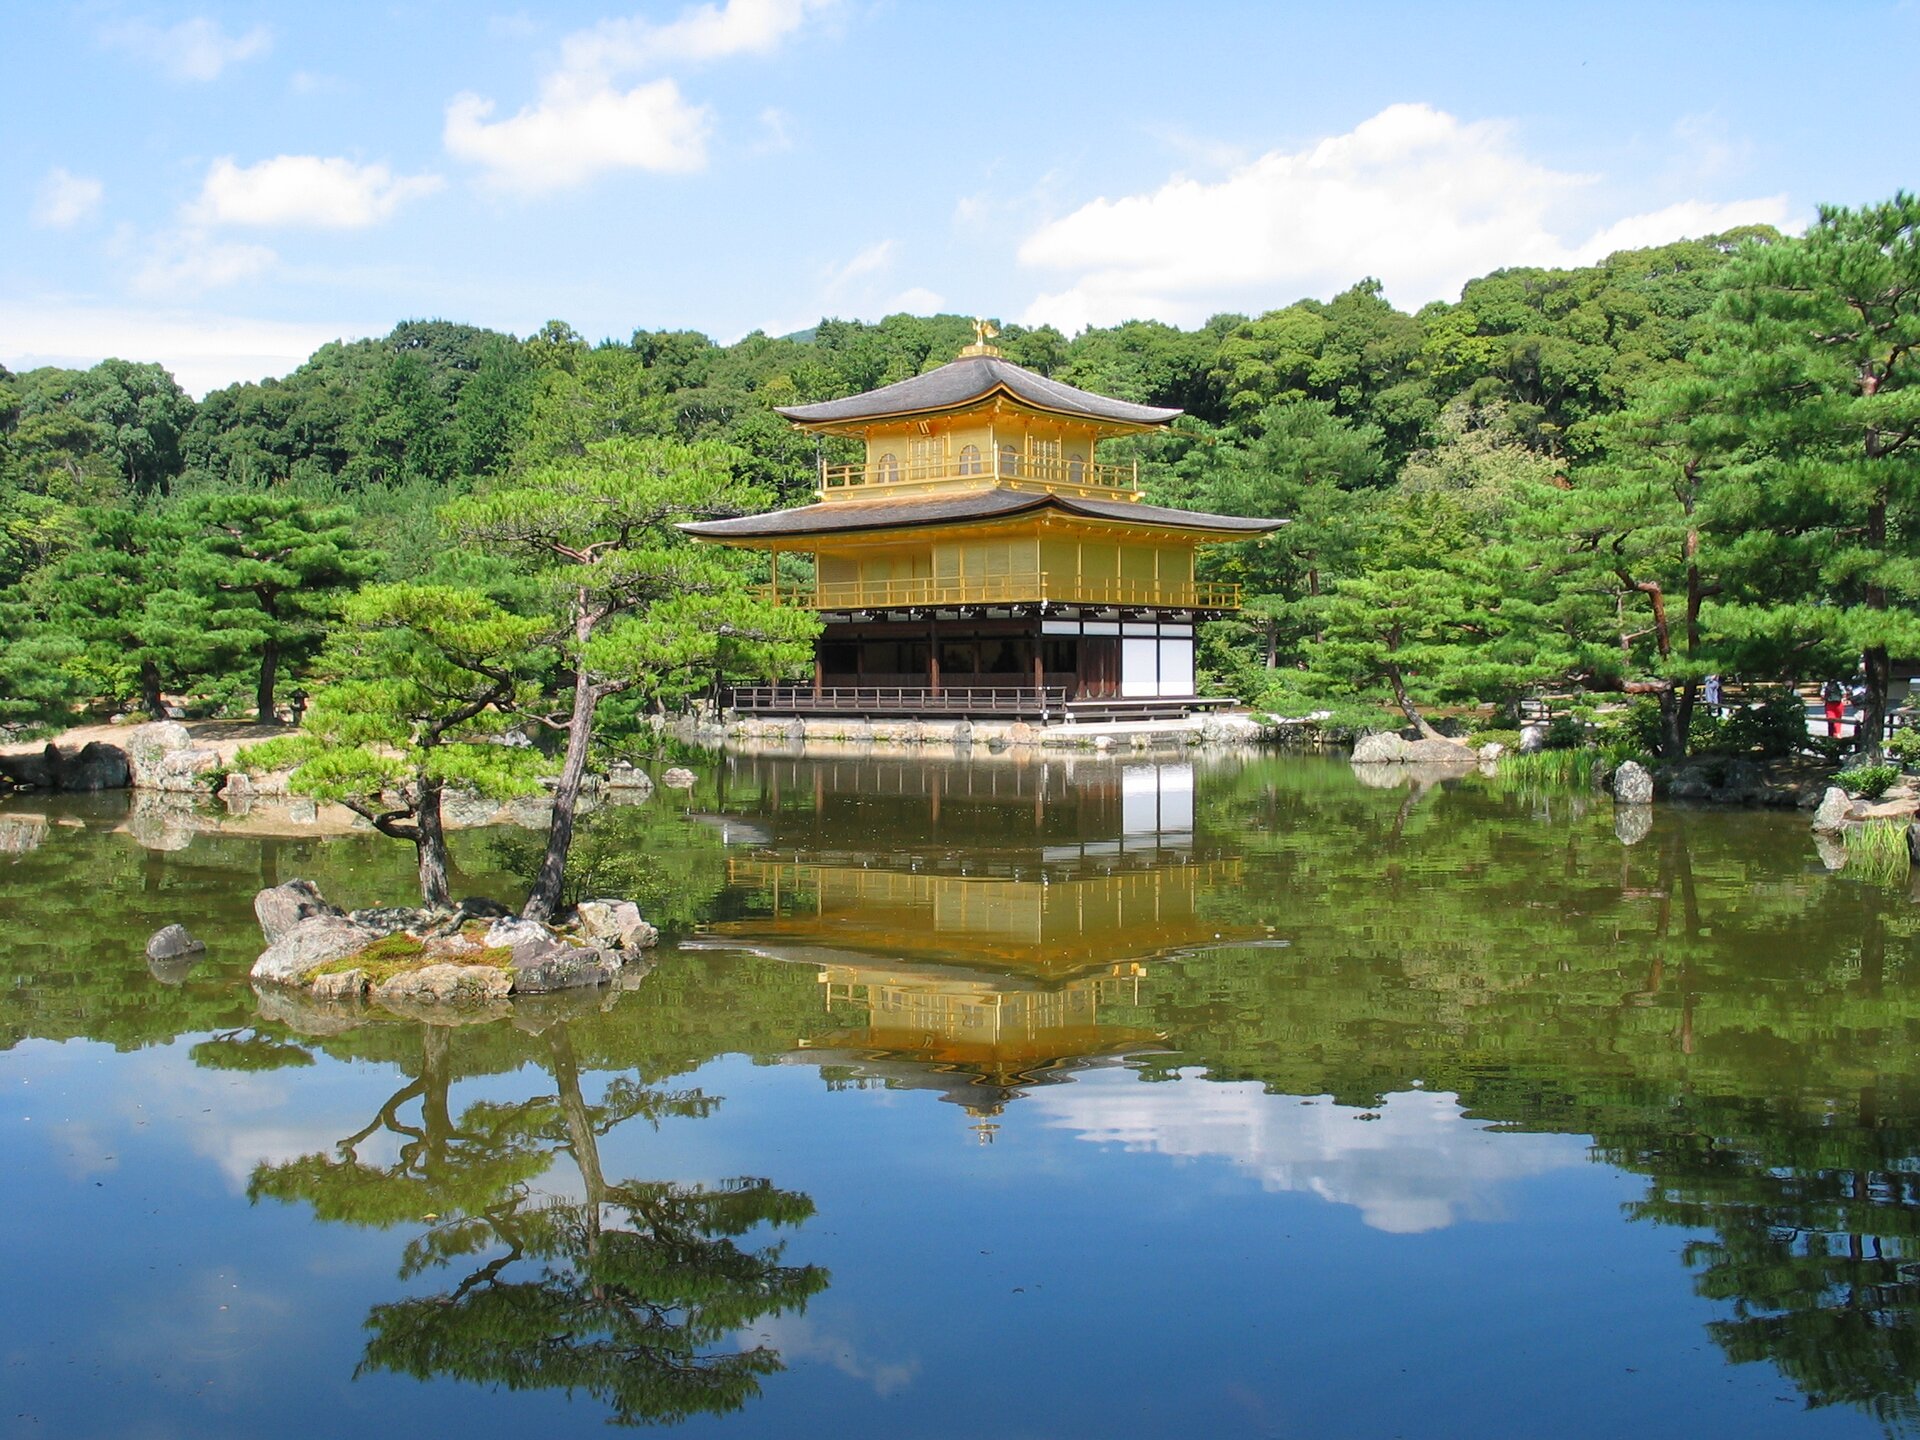 Na zdjęciu typowa japońska świątynia udekorowana złotem. Położona nad wodą w parku. Bujna roślinność.